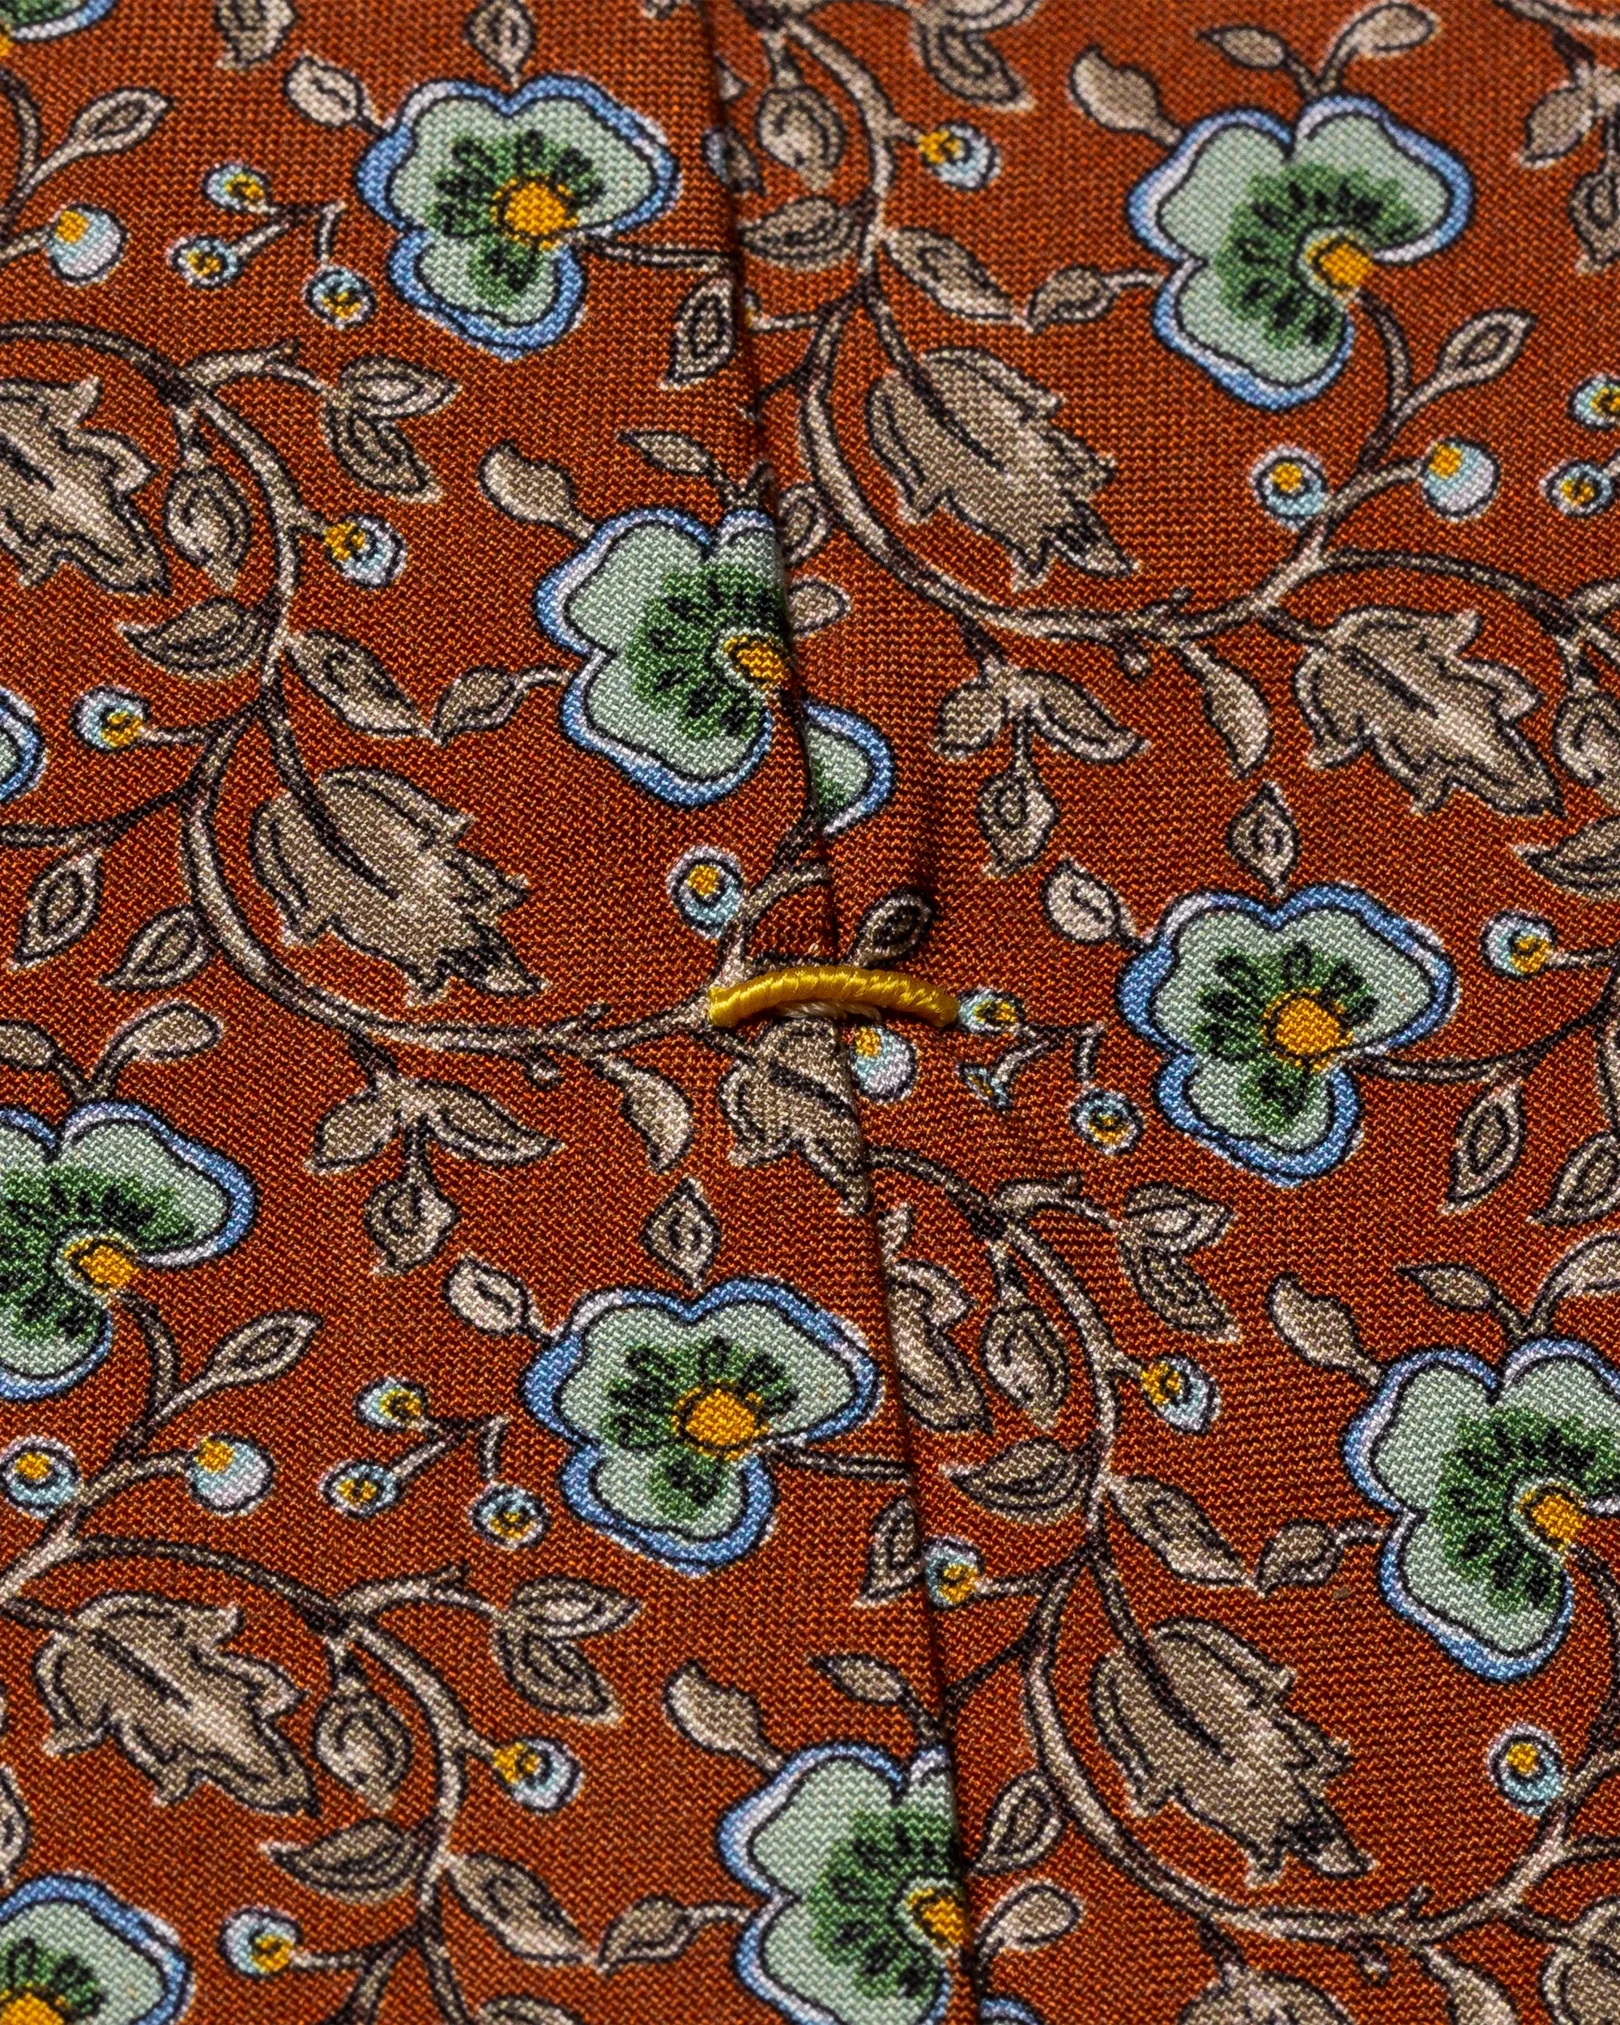 Eton - orange floral silk tie